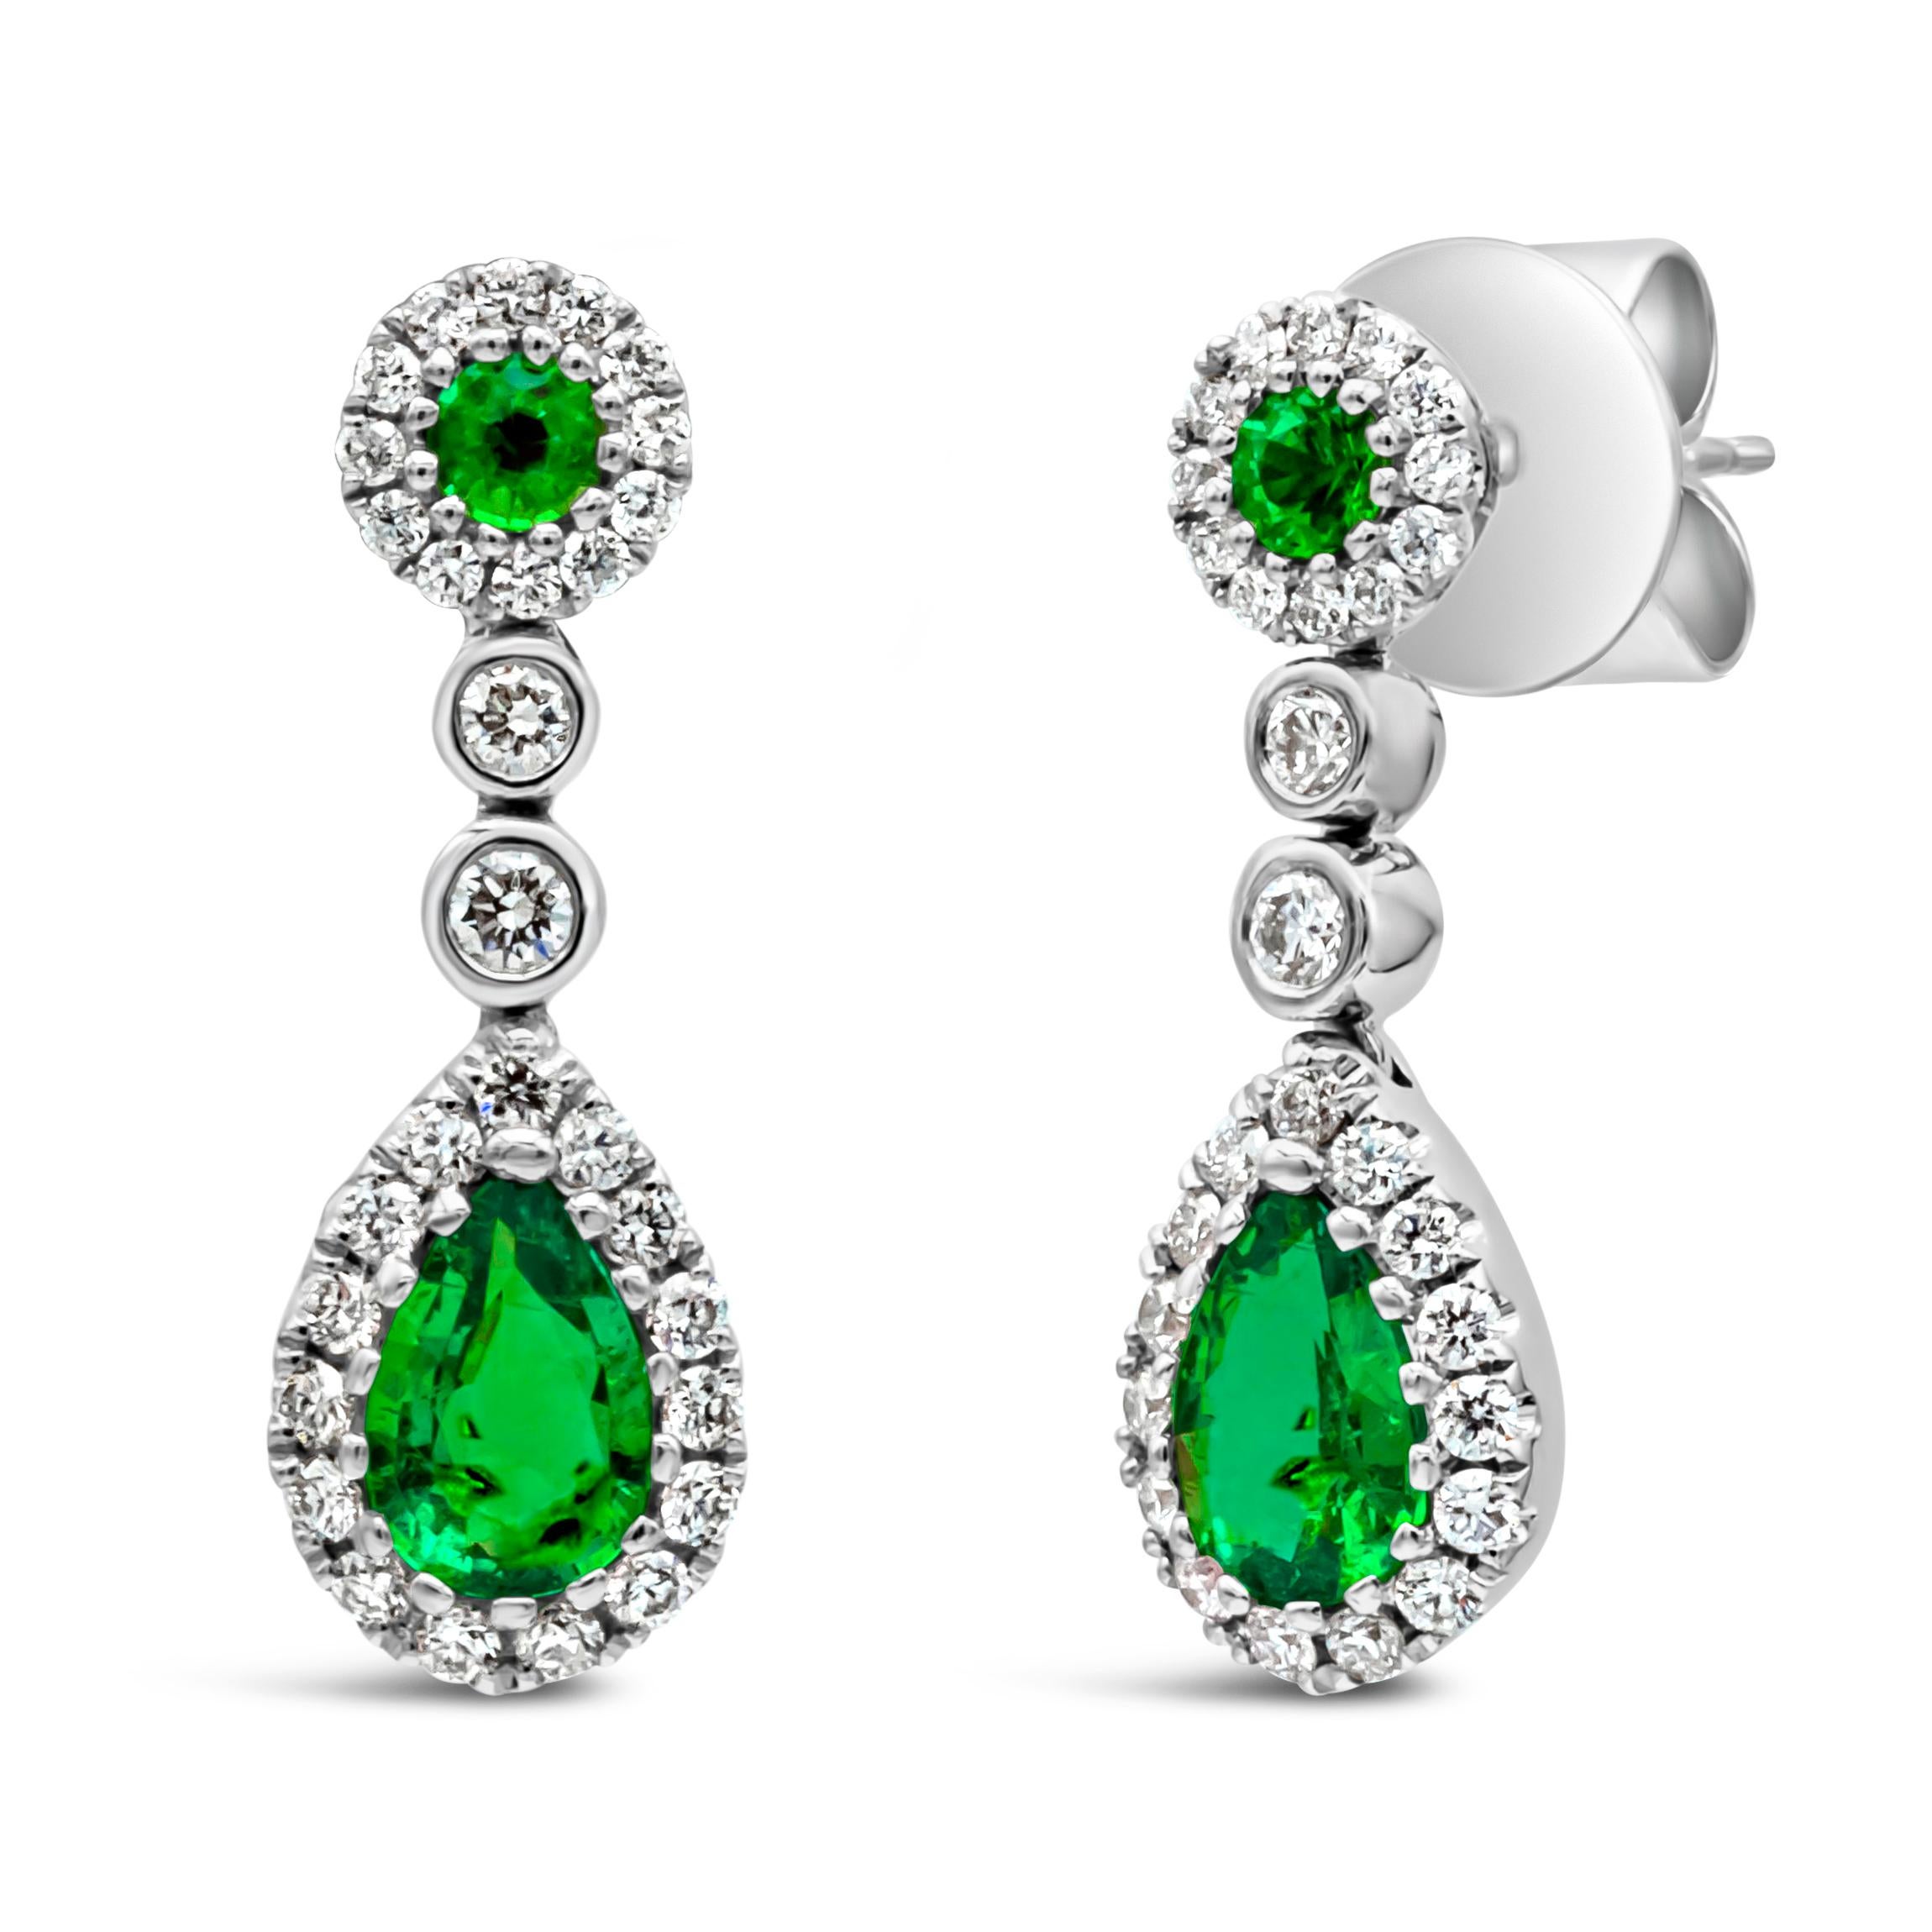 Ein wunderschöner und lebendiger Ohrring mit einem farbenprächtigen, birnenförmigen kolumbianischen grünen Smaragd, der elegant in einem Halo gefasst ist. Aufgehängt an einem brillanten, runden, grünen Smaragd, der von einem runden Diamanten in